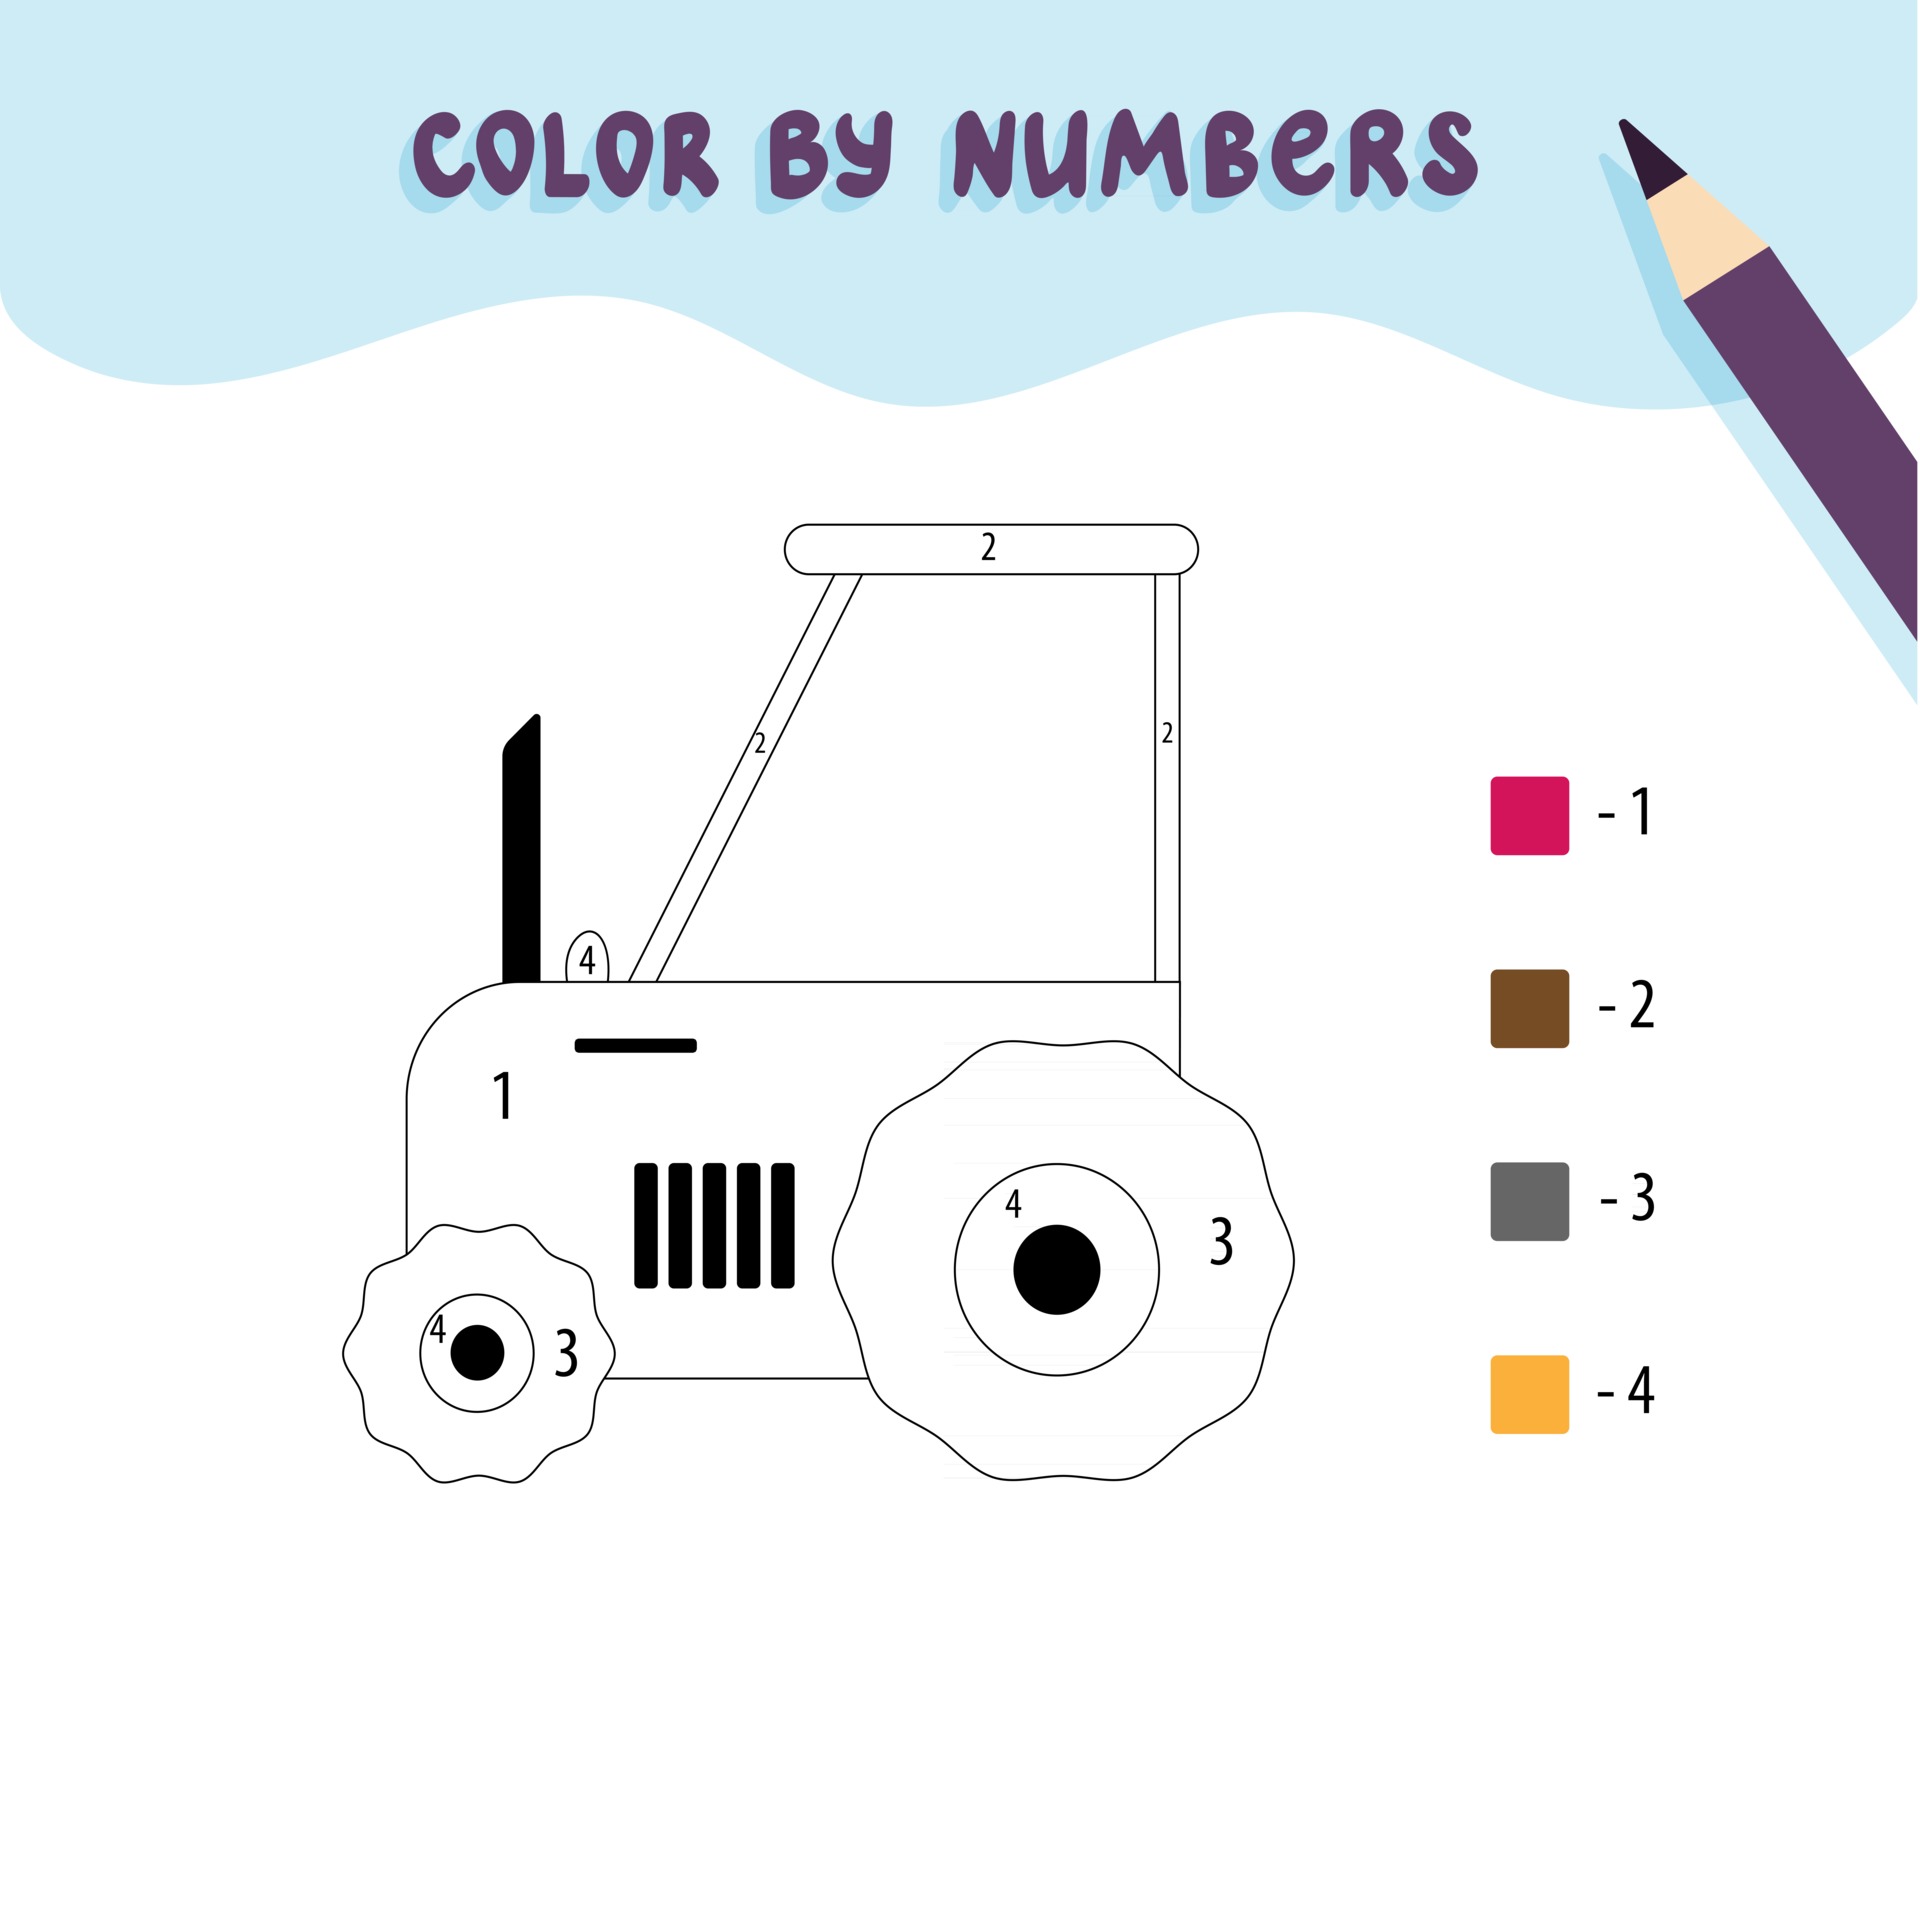 desenho de trator com rosto para colorir para crianças 10002498 Vetor no  Vecteezy